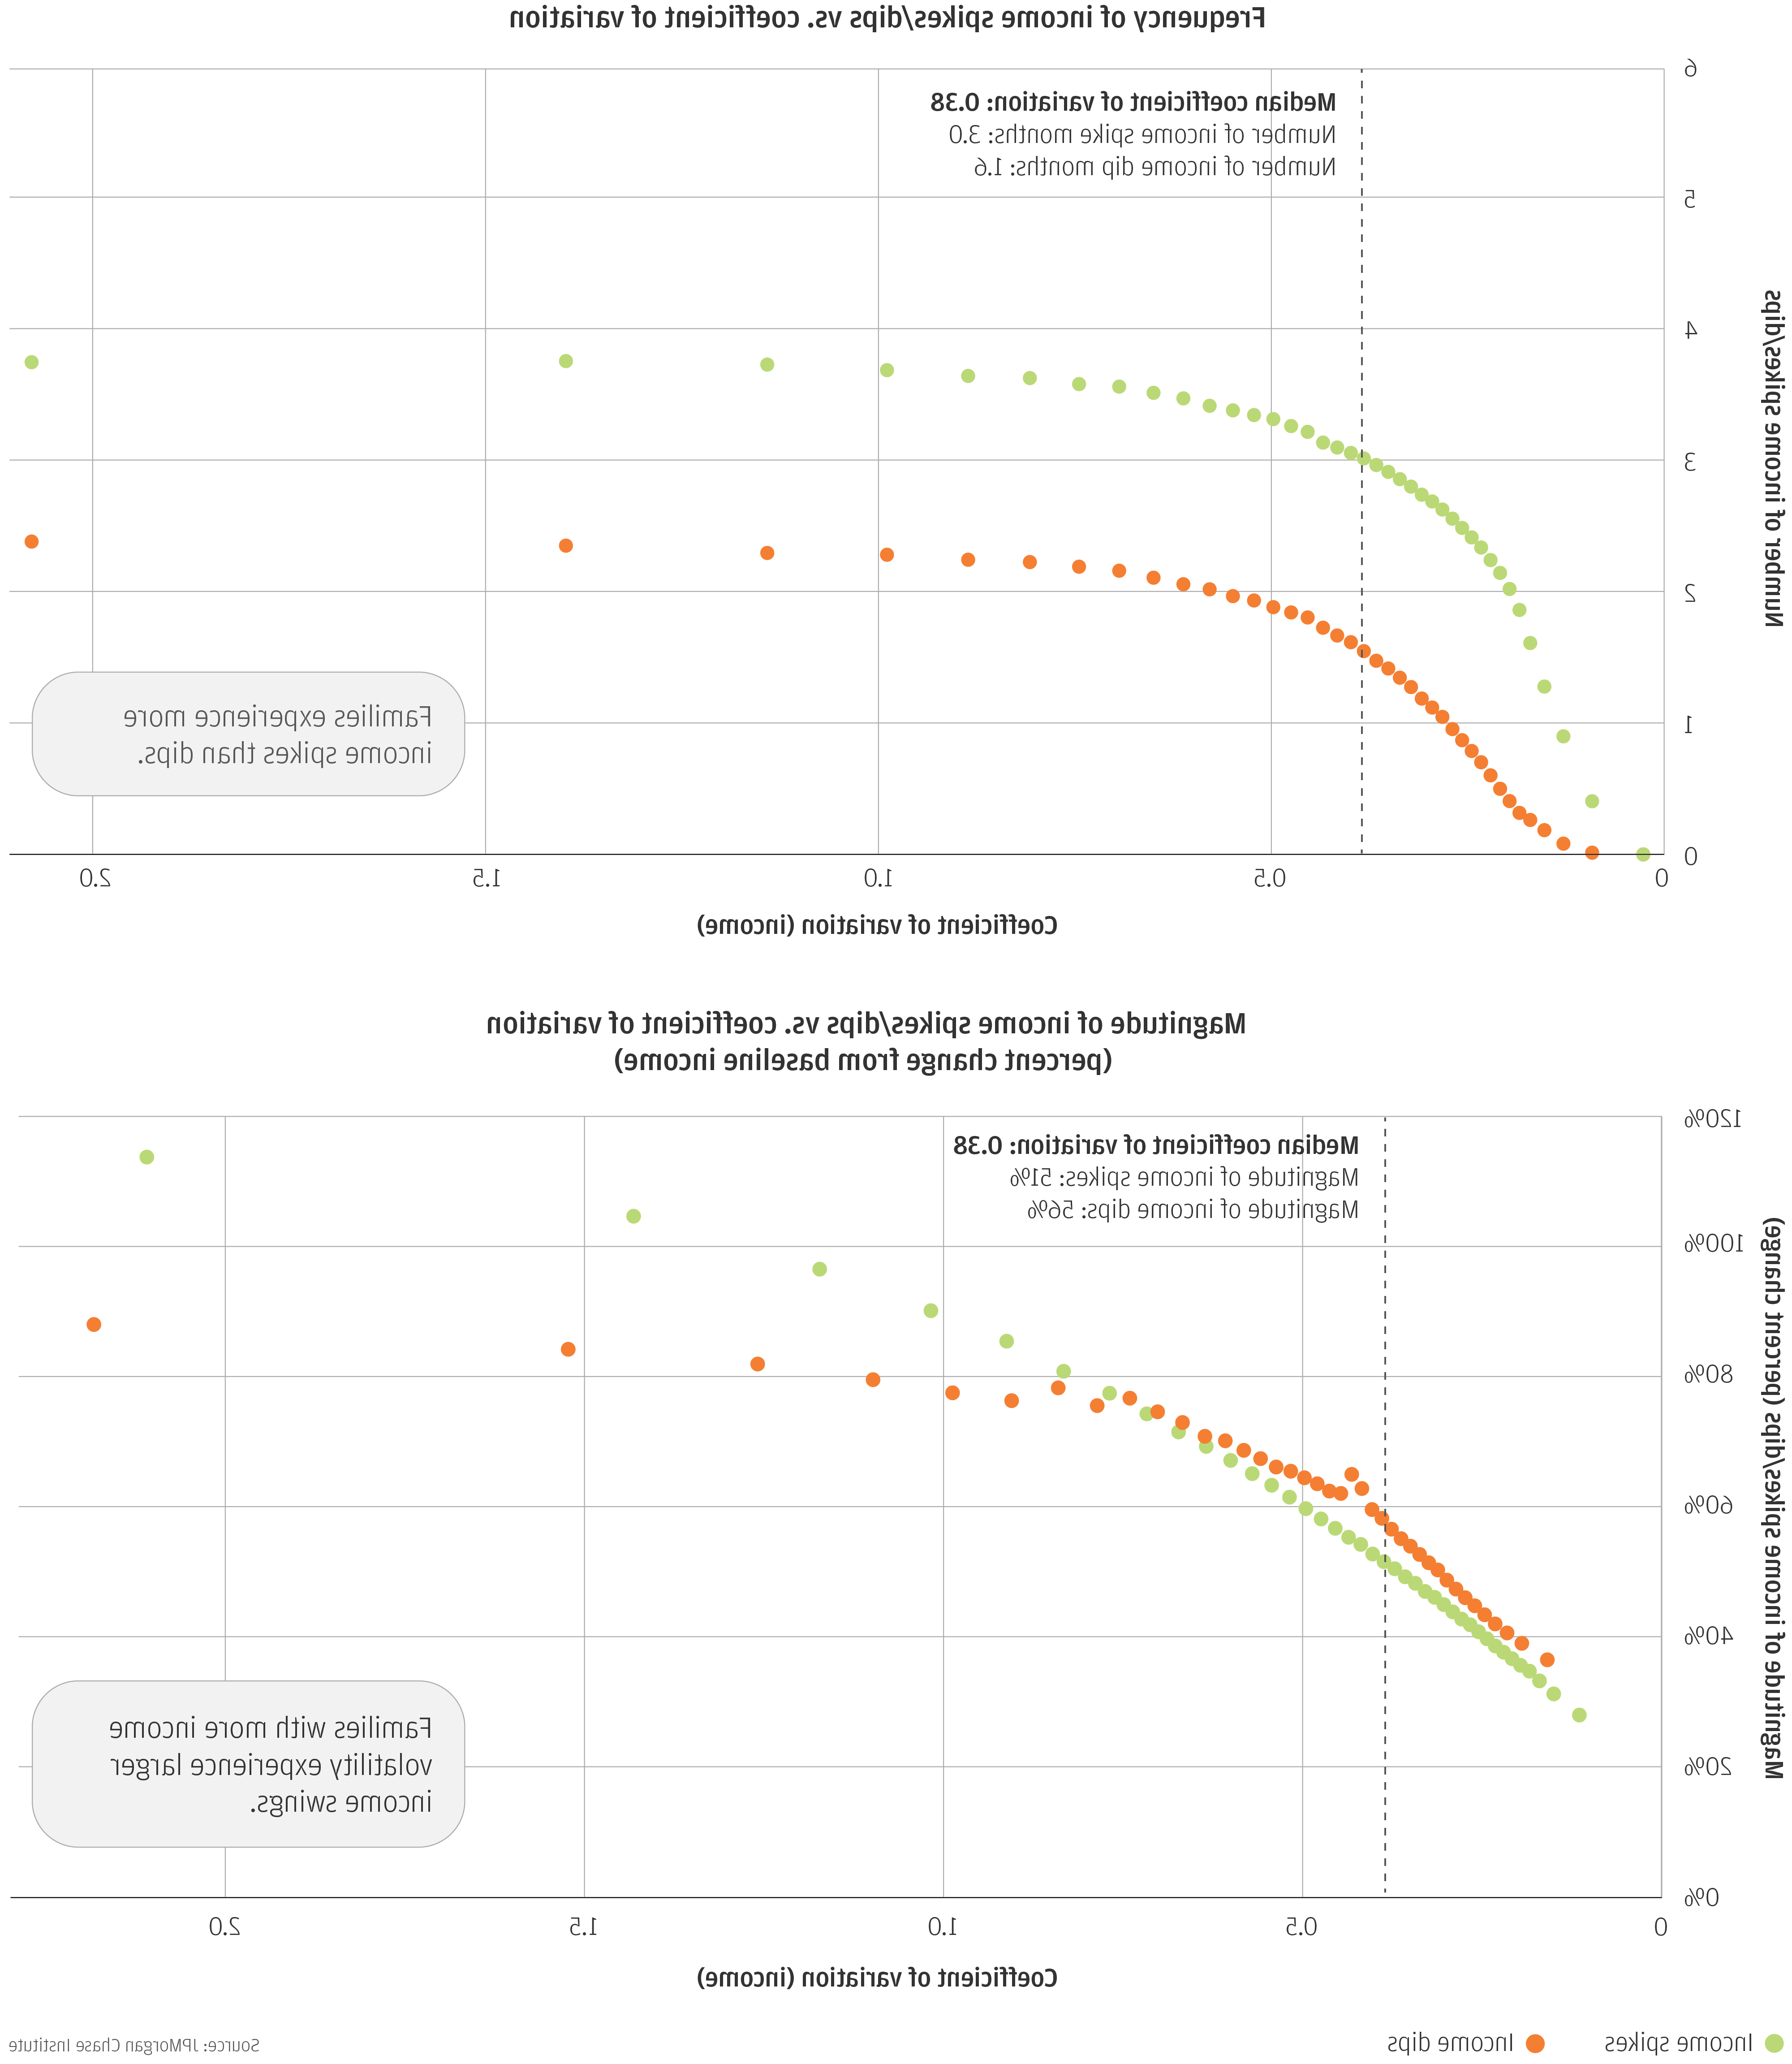 折线图1描述了收入峰值/下降的频率与. 变化系数和线形图2描述了收入峰值/下降幅度vs. 变动系数(与基线收入相比的百分比变化)